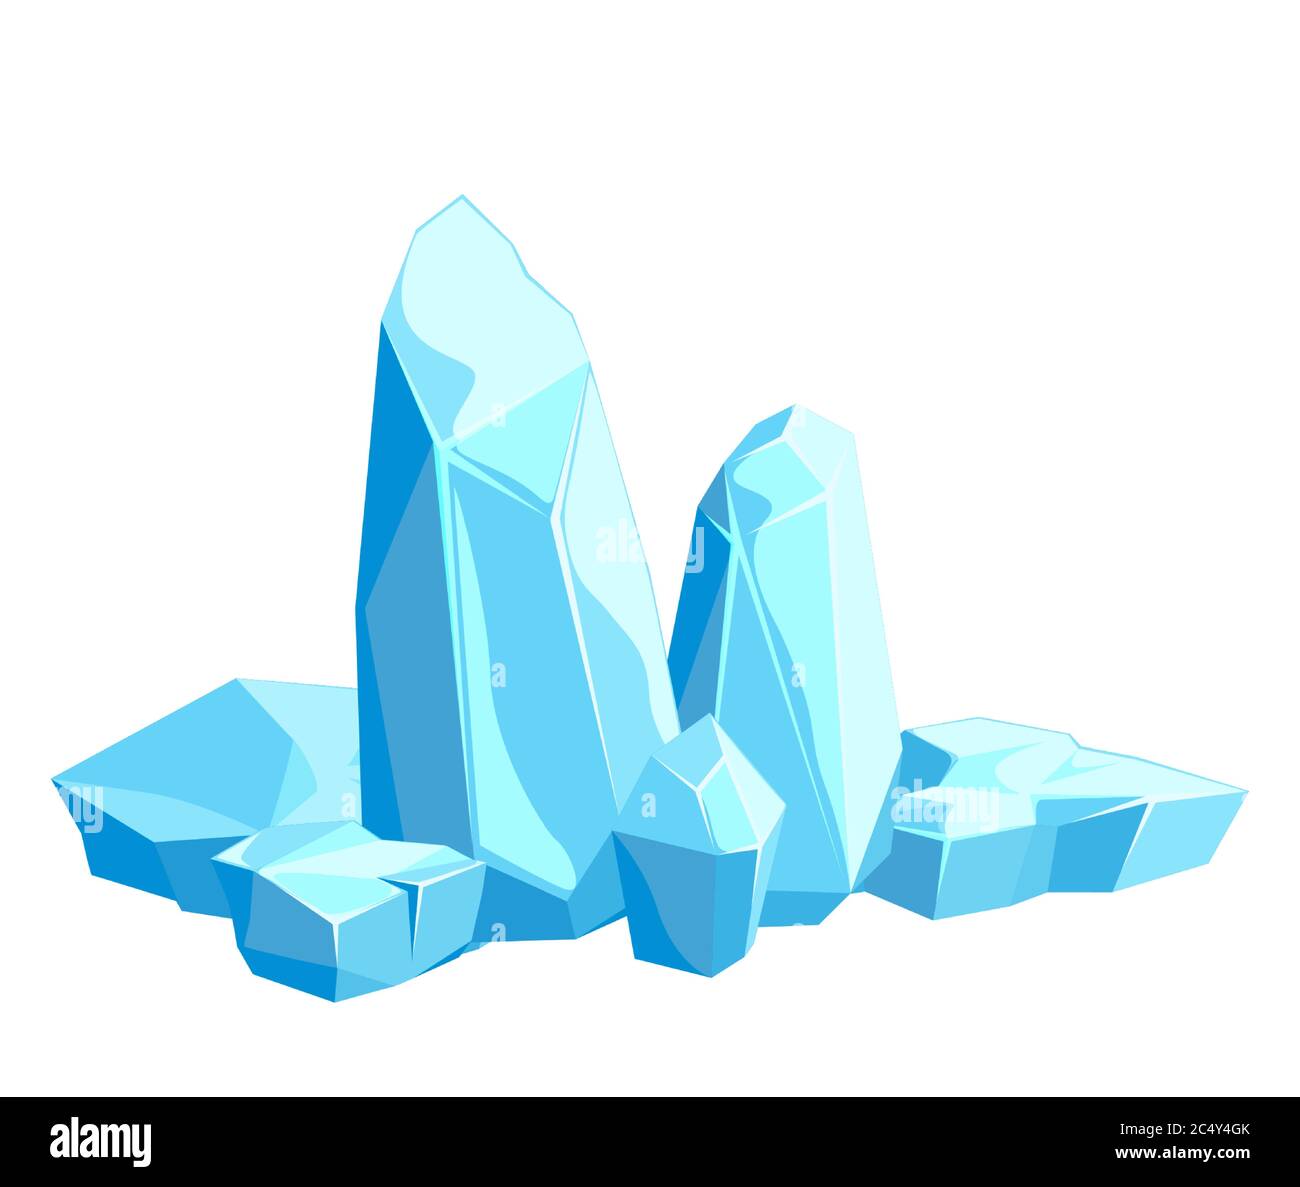 Pezzi e cristalli di ghiaccio, iceberg per il design e l'arredamento Illustrazione Vettoriale